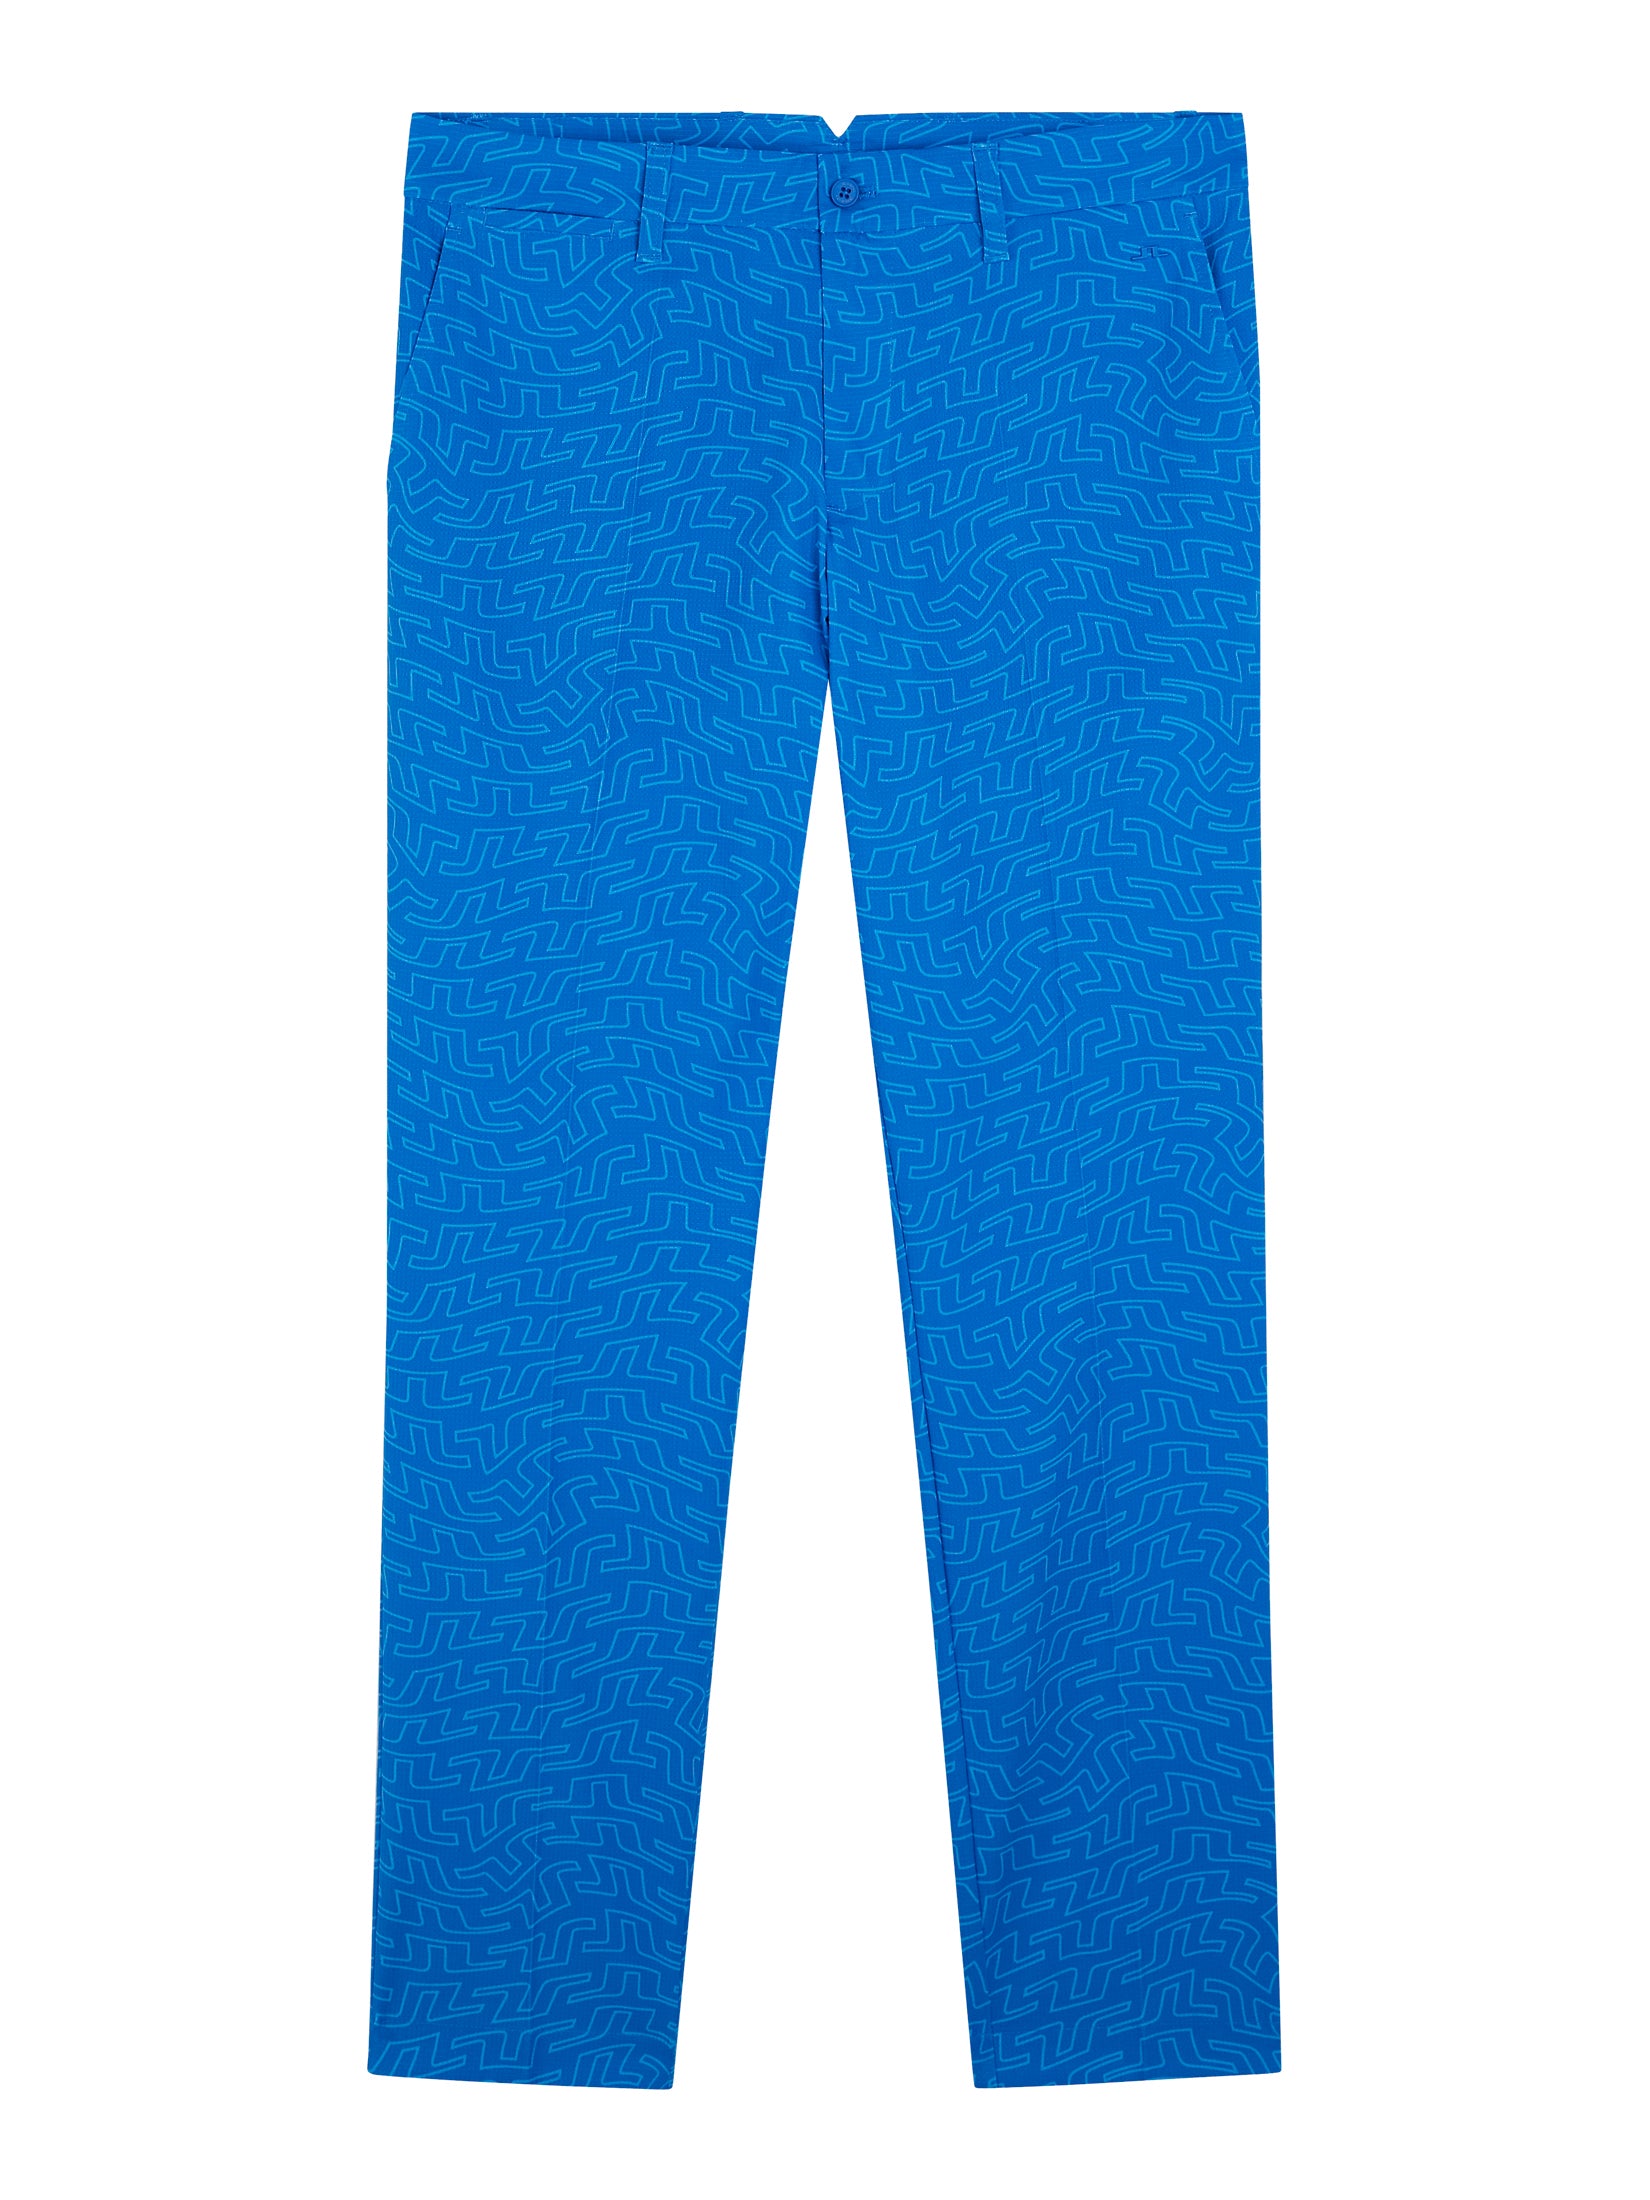 Premium Vector | Template suit trouser pants vector illustration flat  design outline clothing